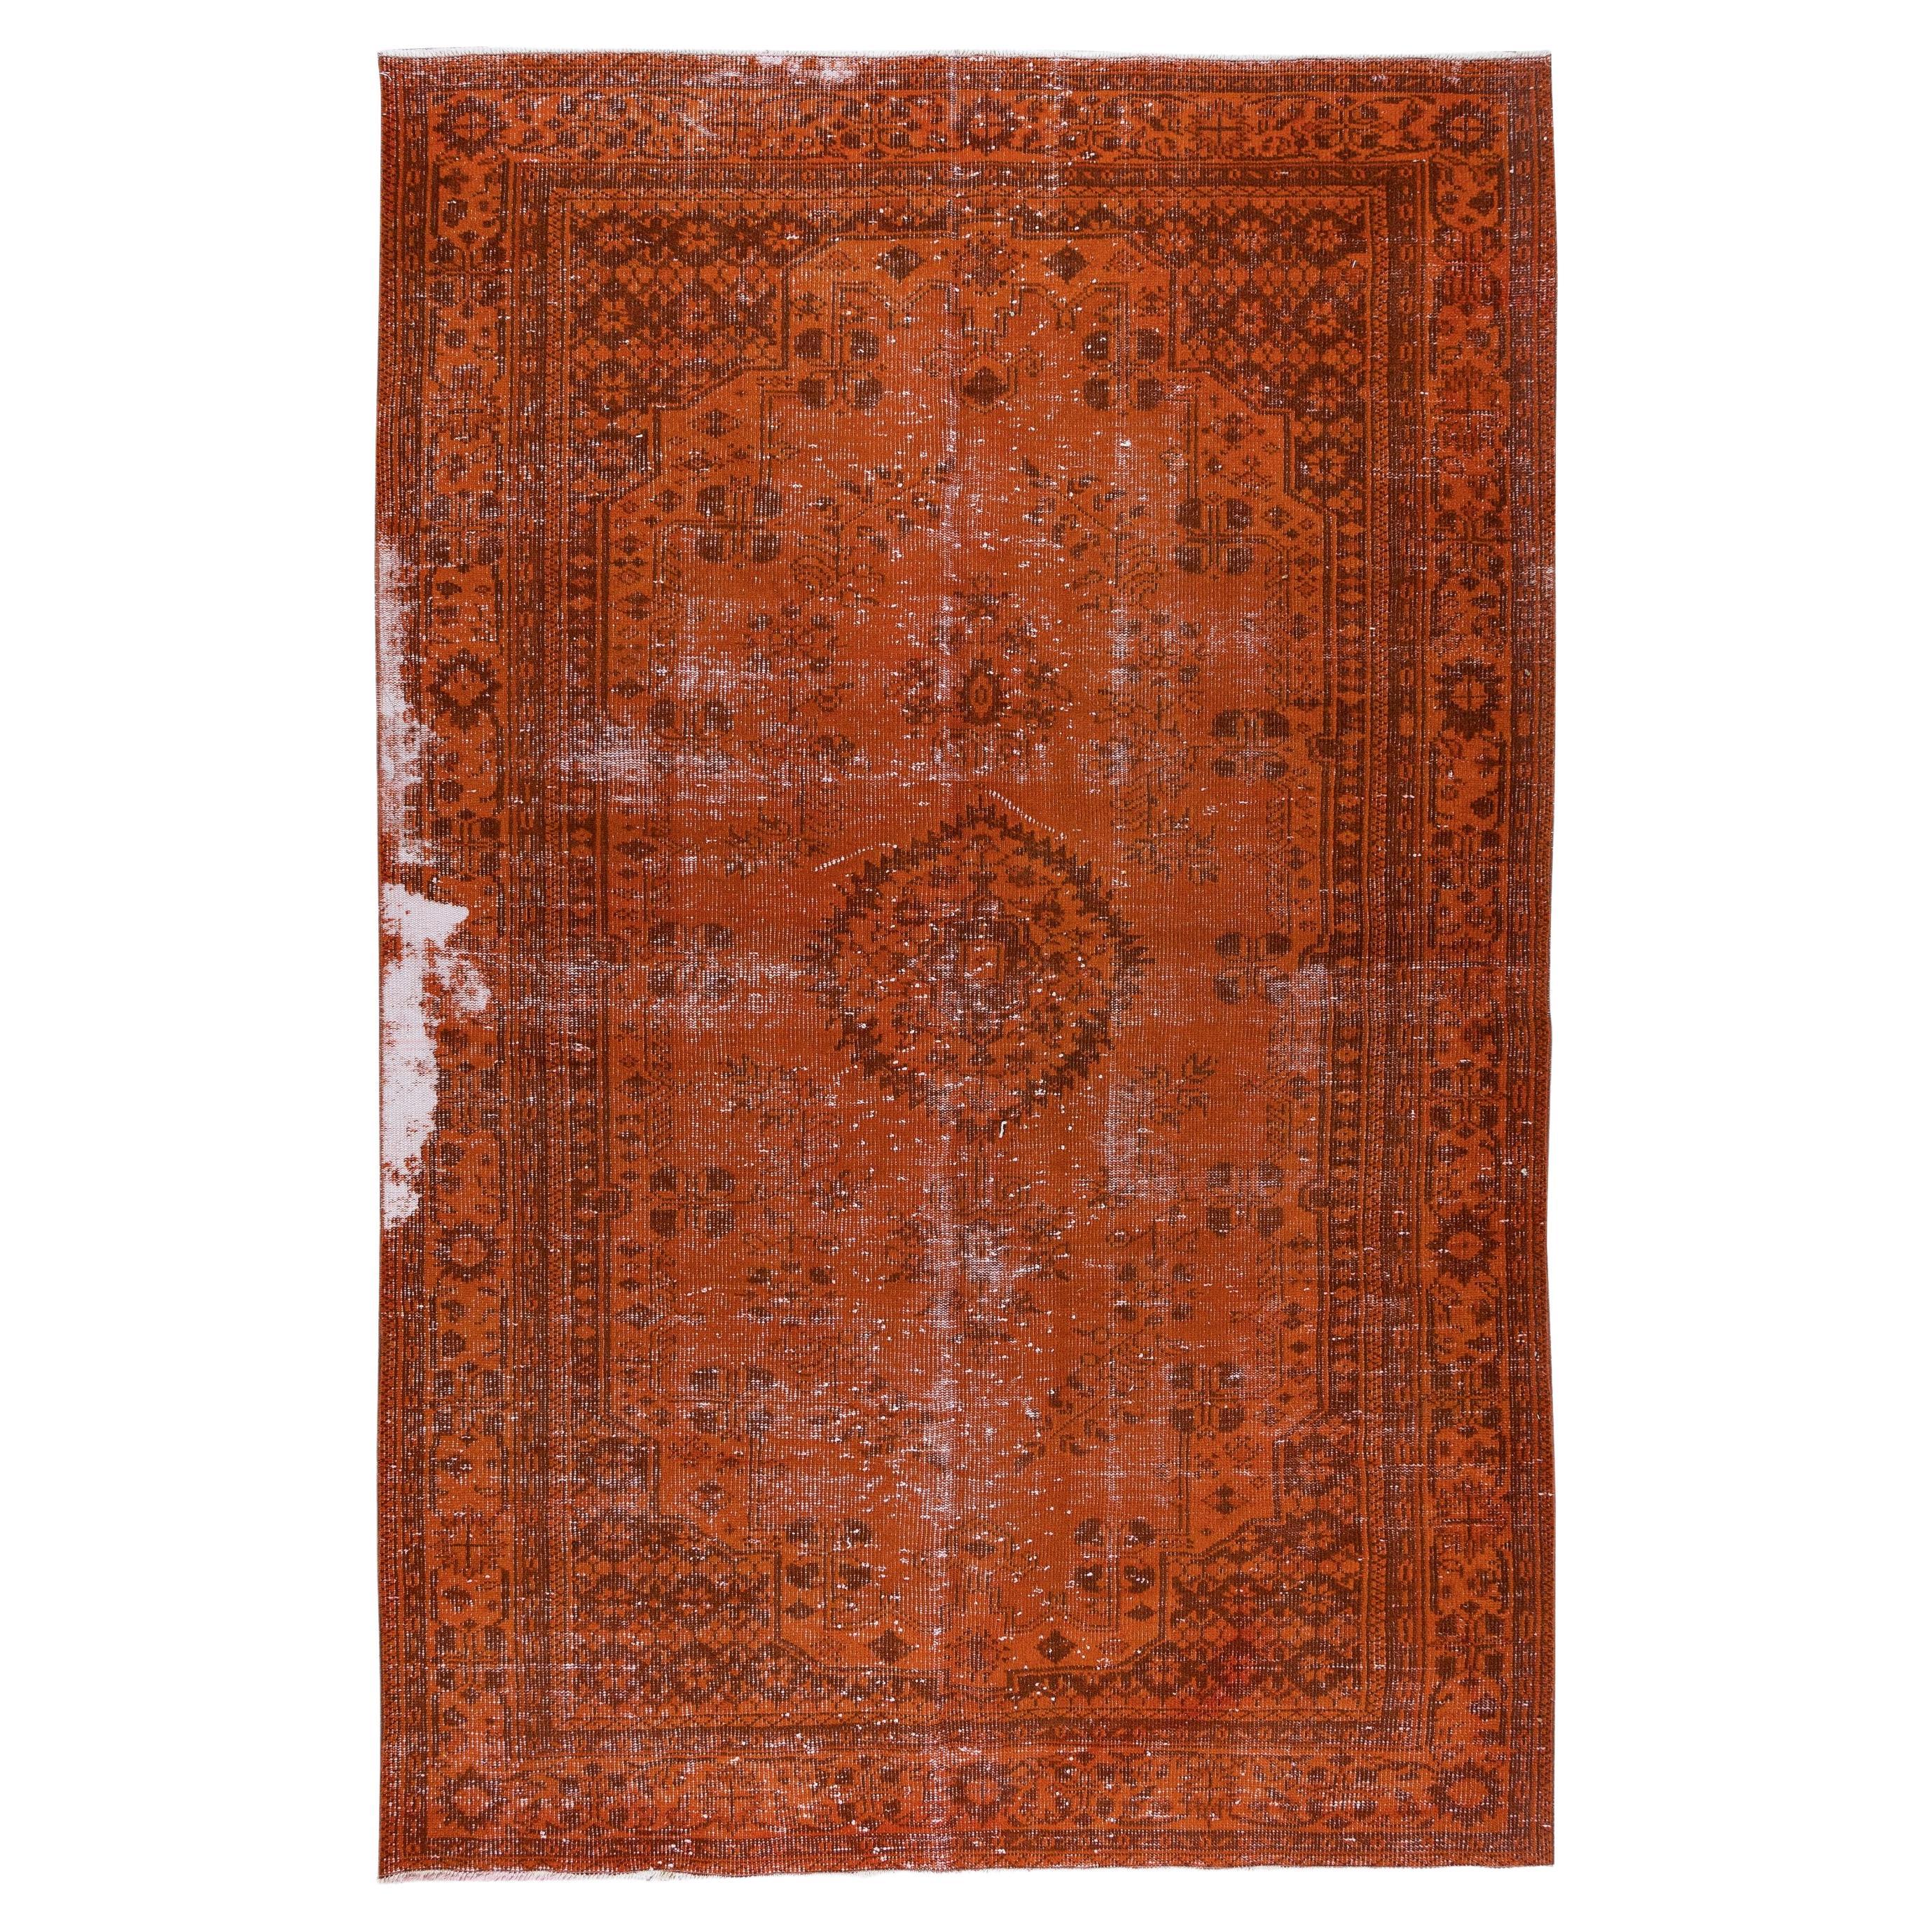 Tapis en laine turque vintage fait à la main orange 6,2 x 9,8 m, tapis moderne vieilli